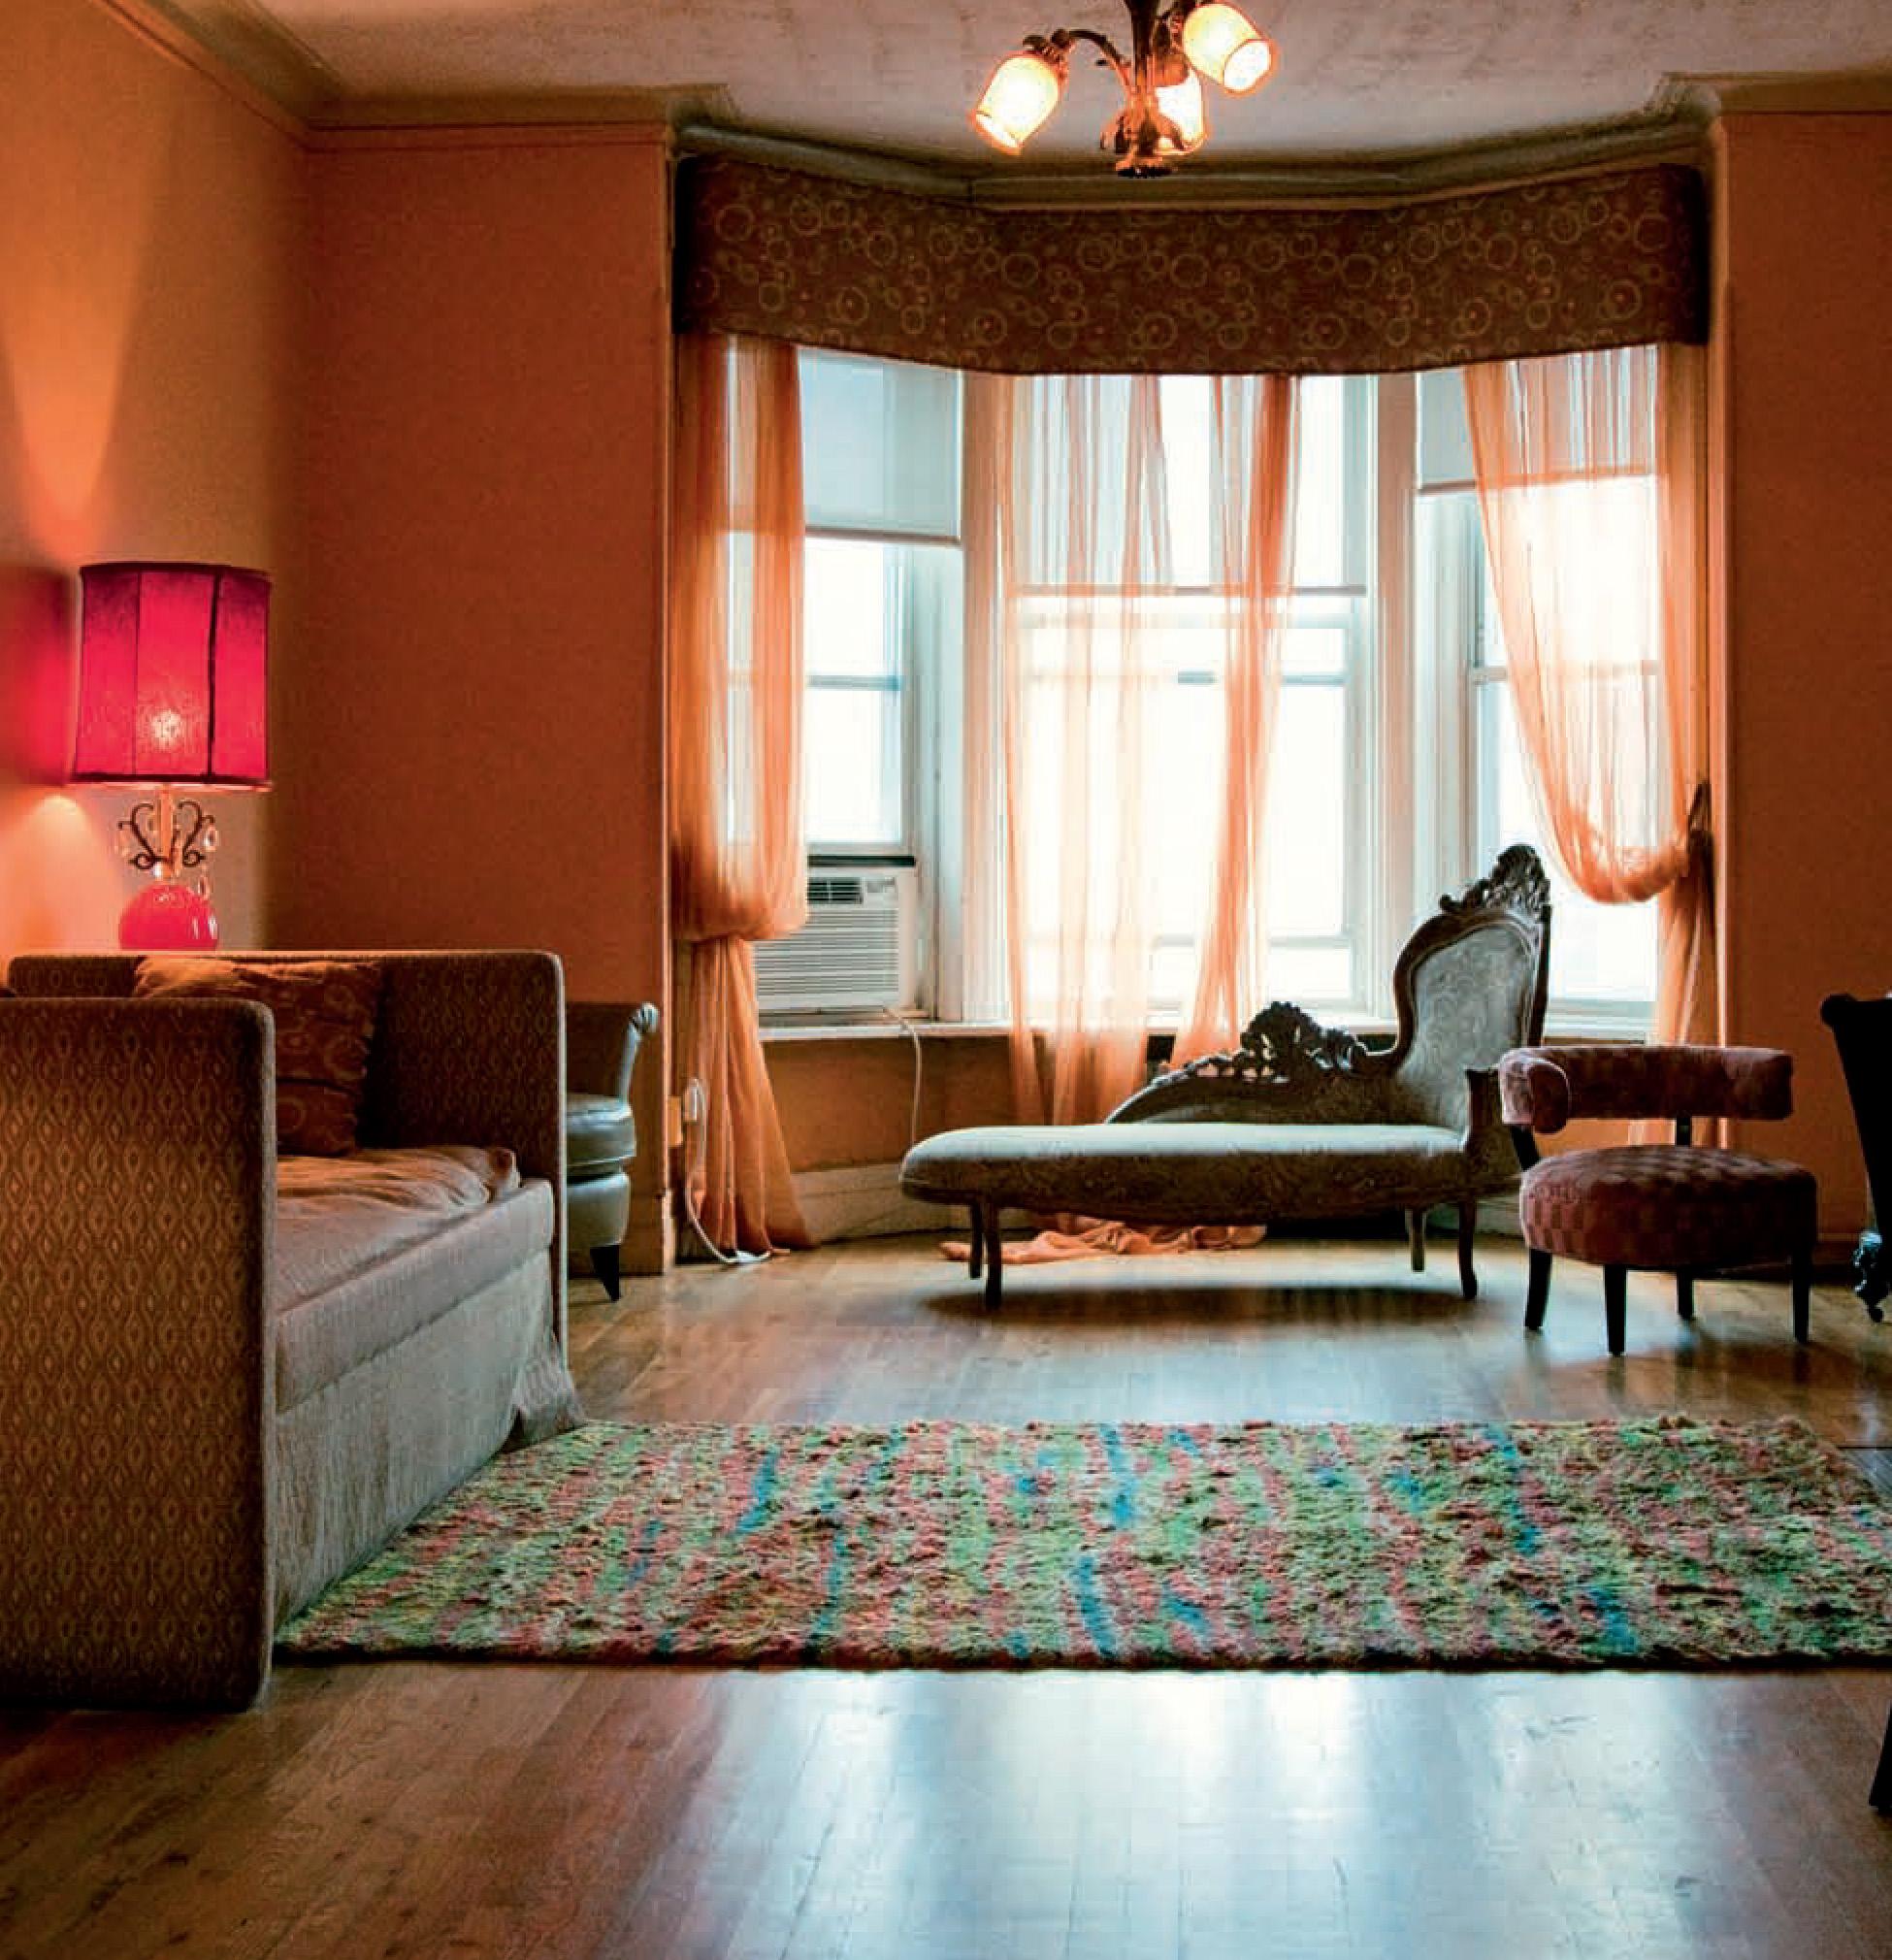 Hôtel Chelsea, New York. Chambre 822 - Photograph de Victoria Cohen